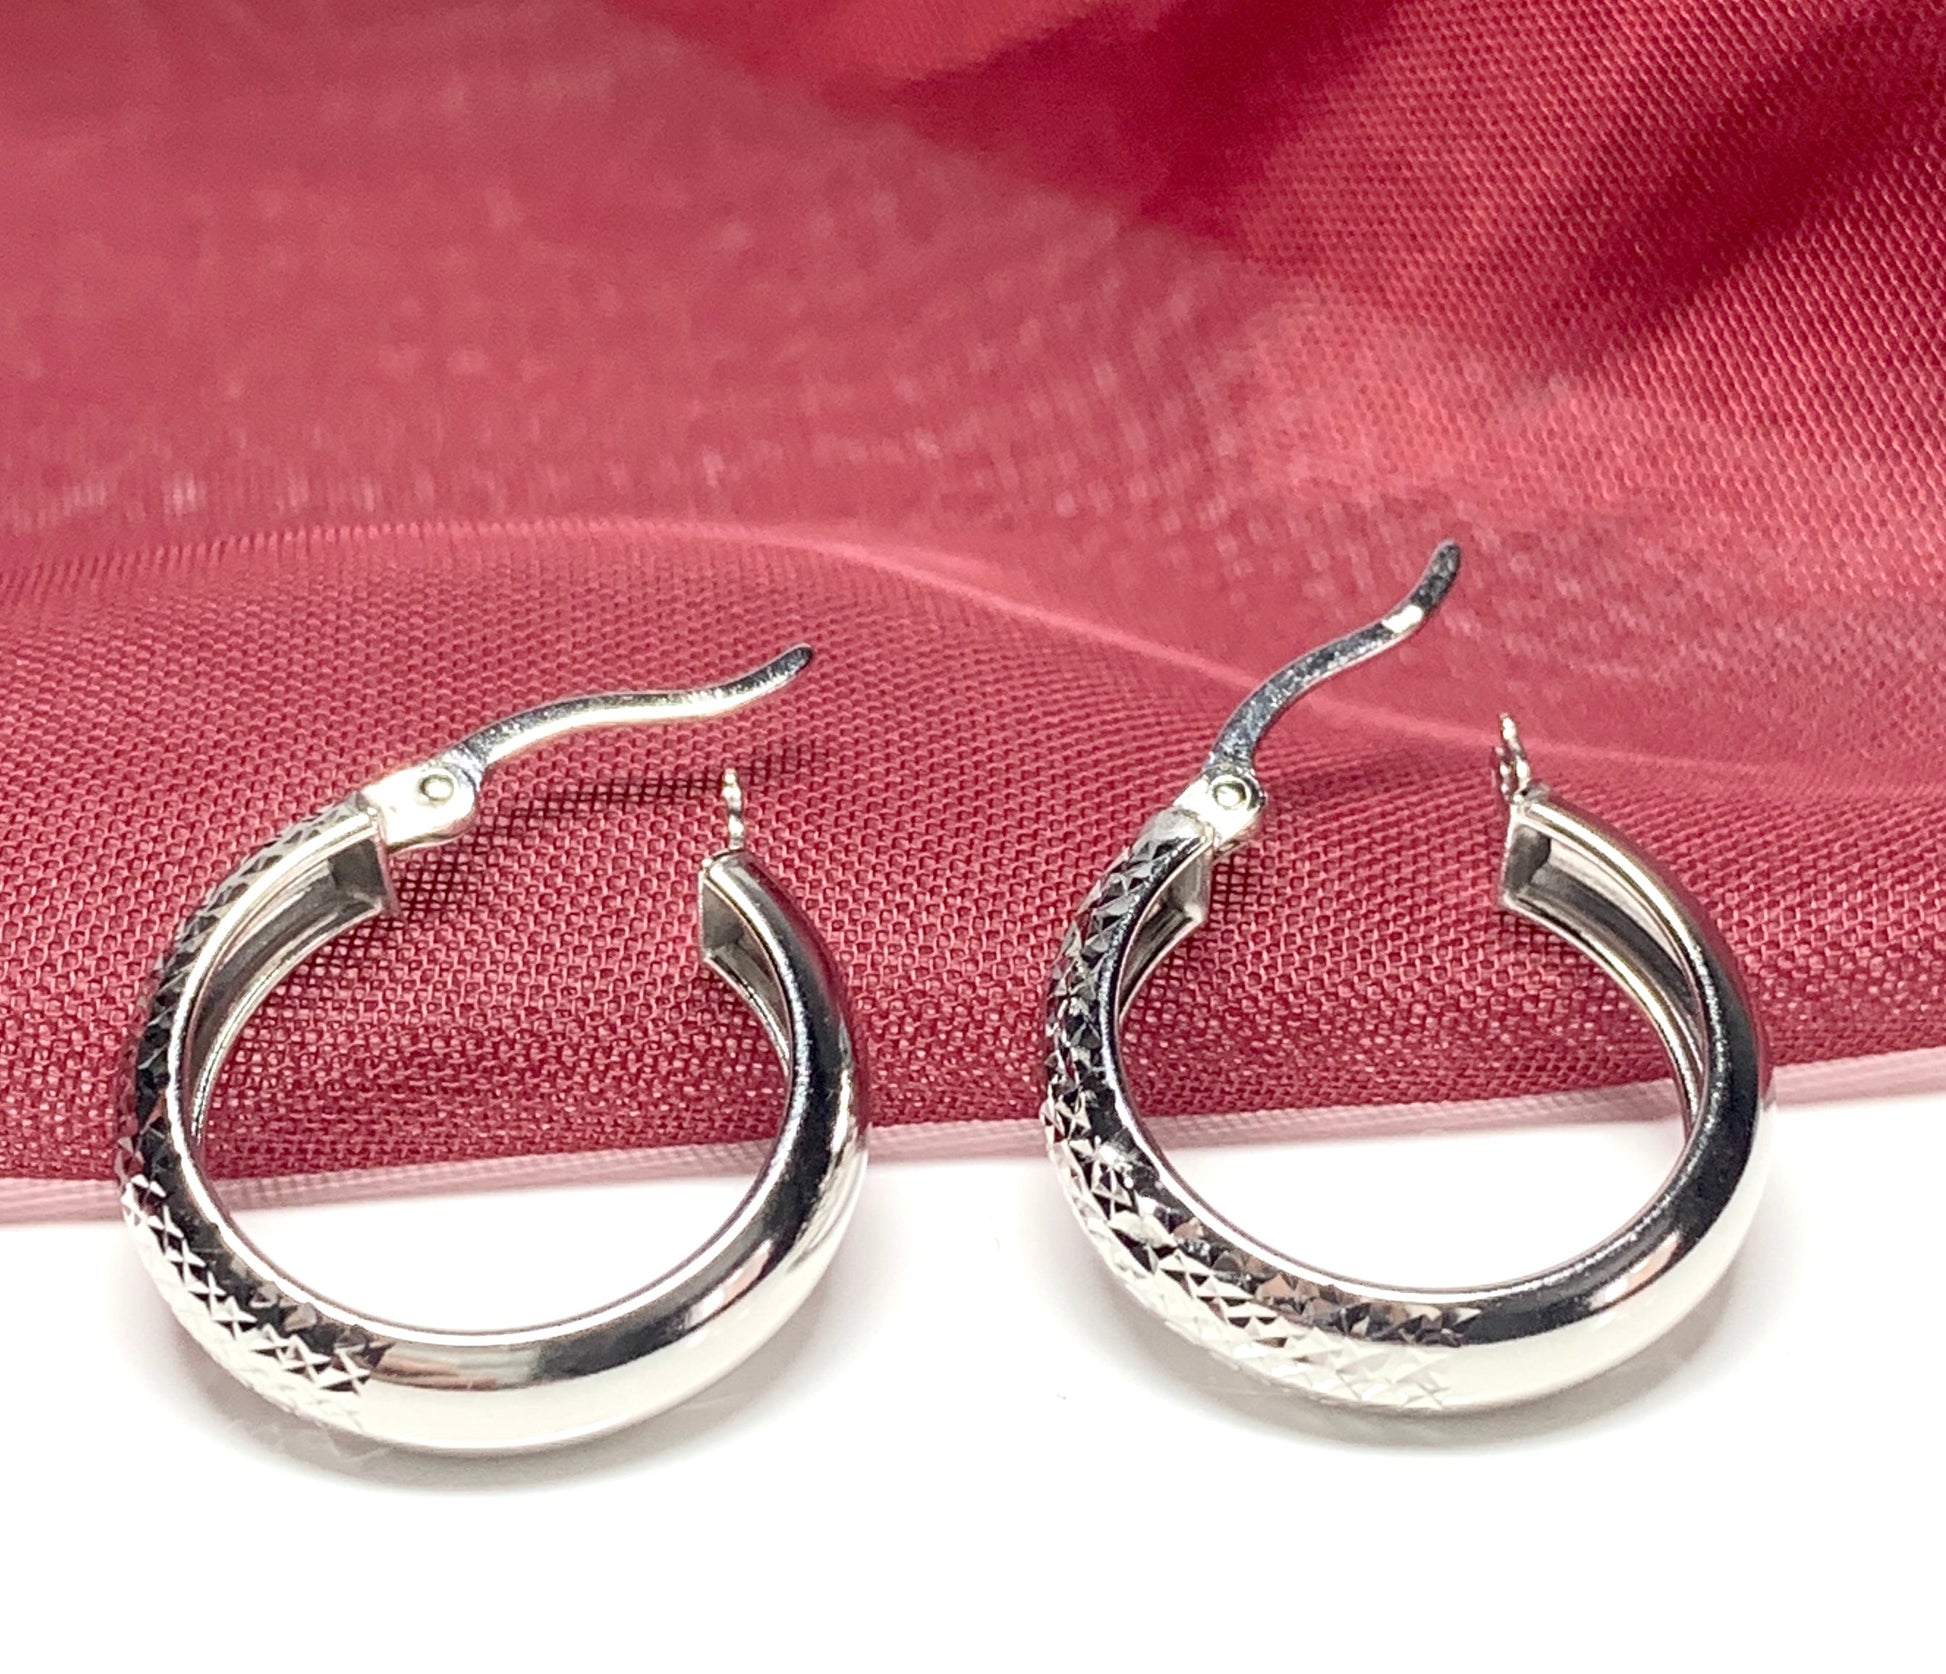 White Gold Hoop Earrings Diamond Cut Patterned 21 mm